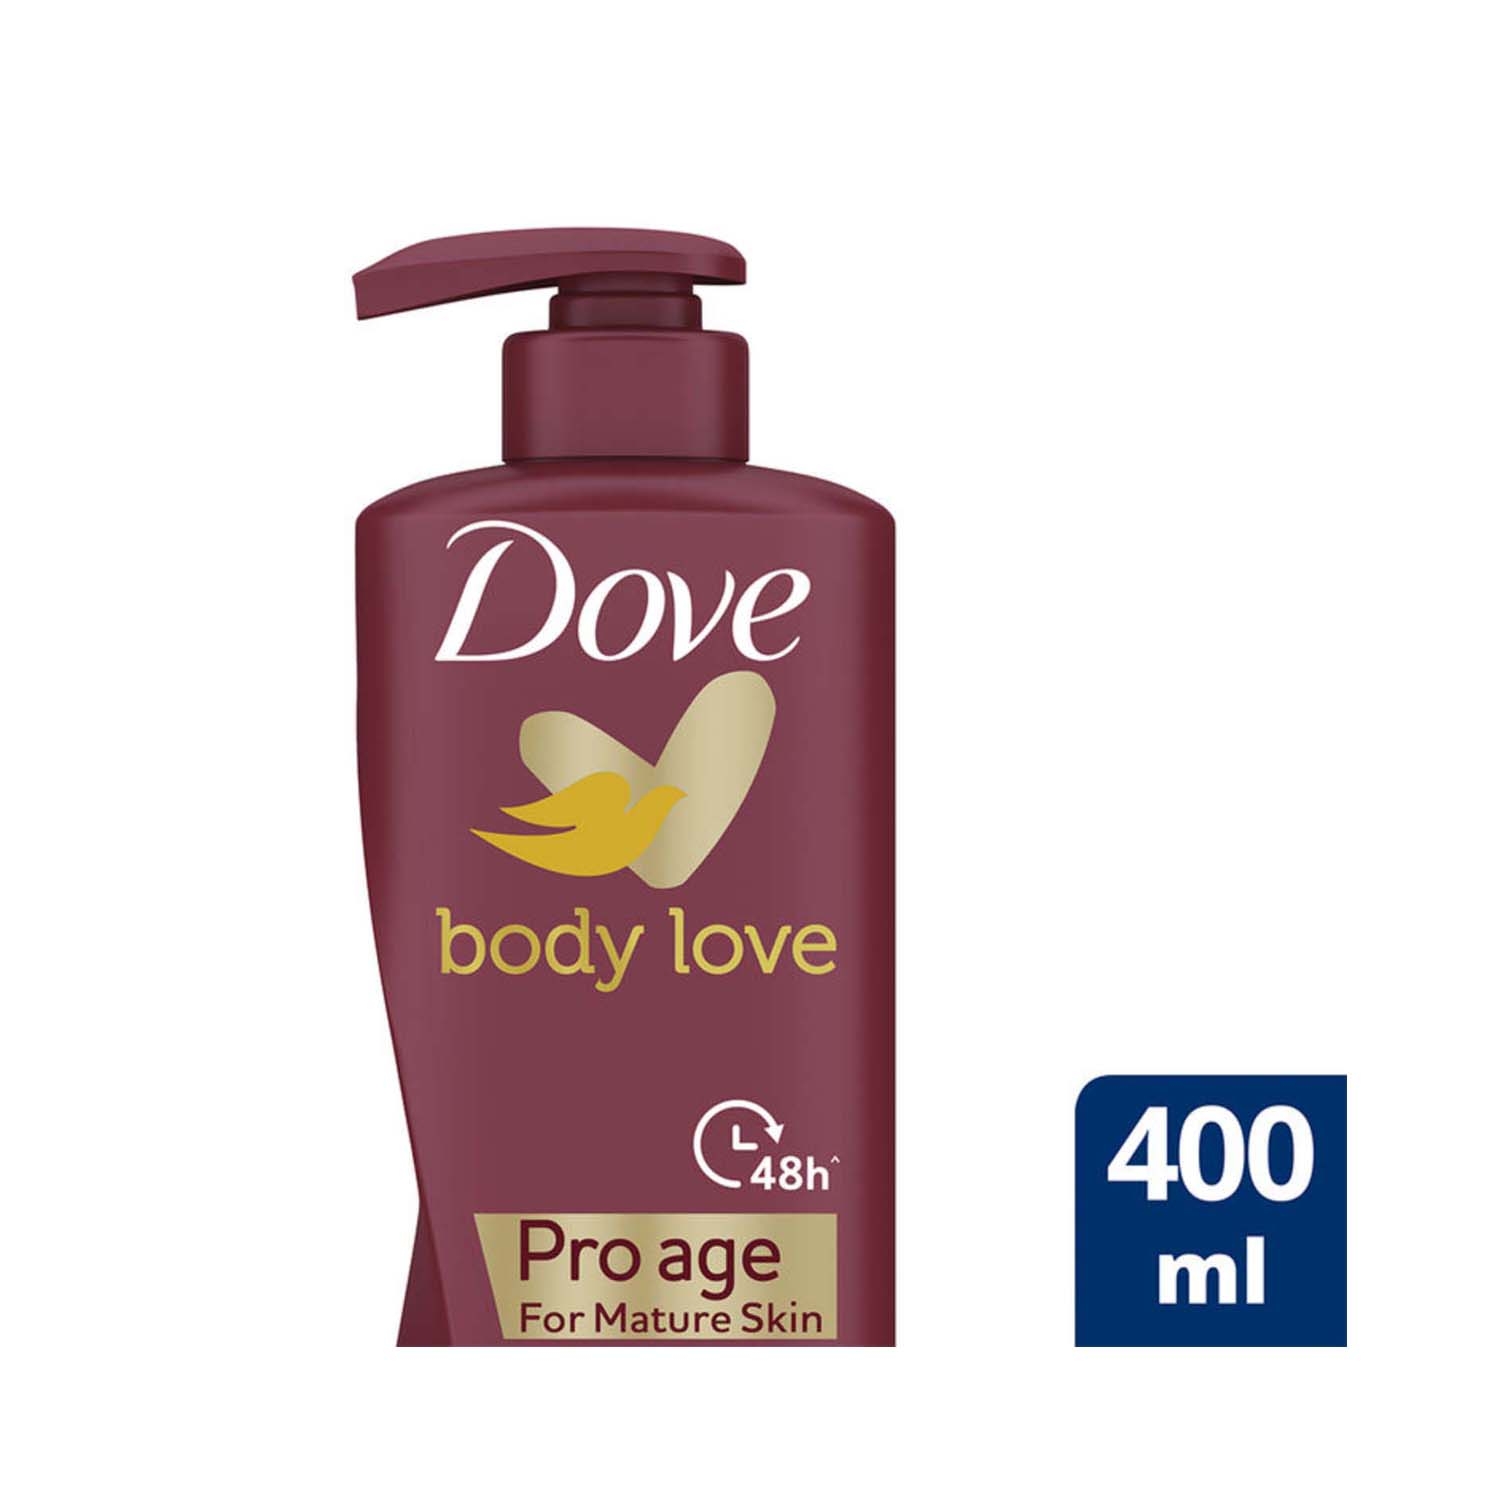 Dove | Dove Body Love Pro Age Body Lotion (400ml)